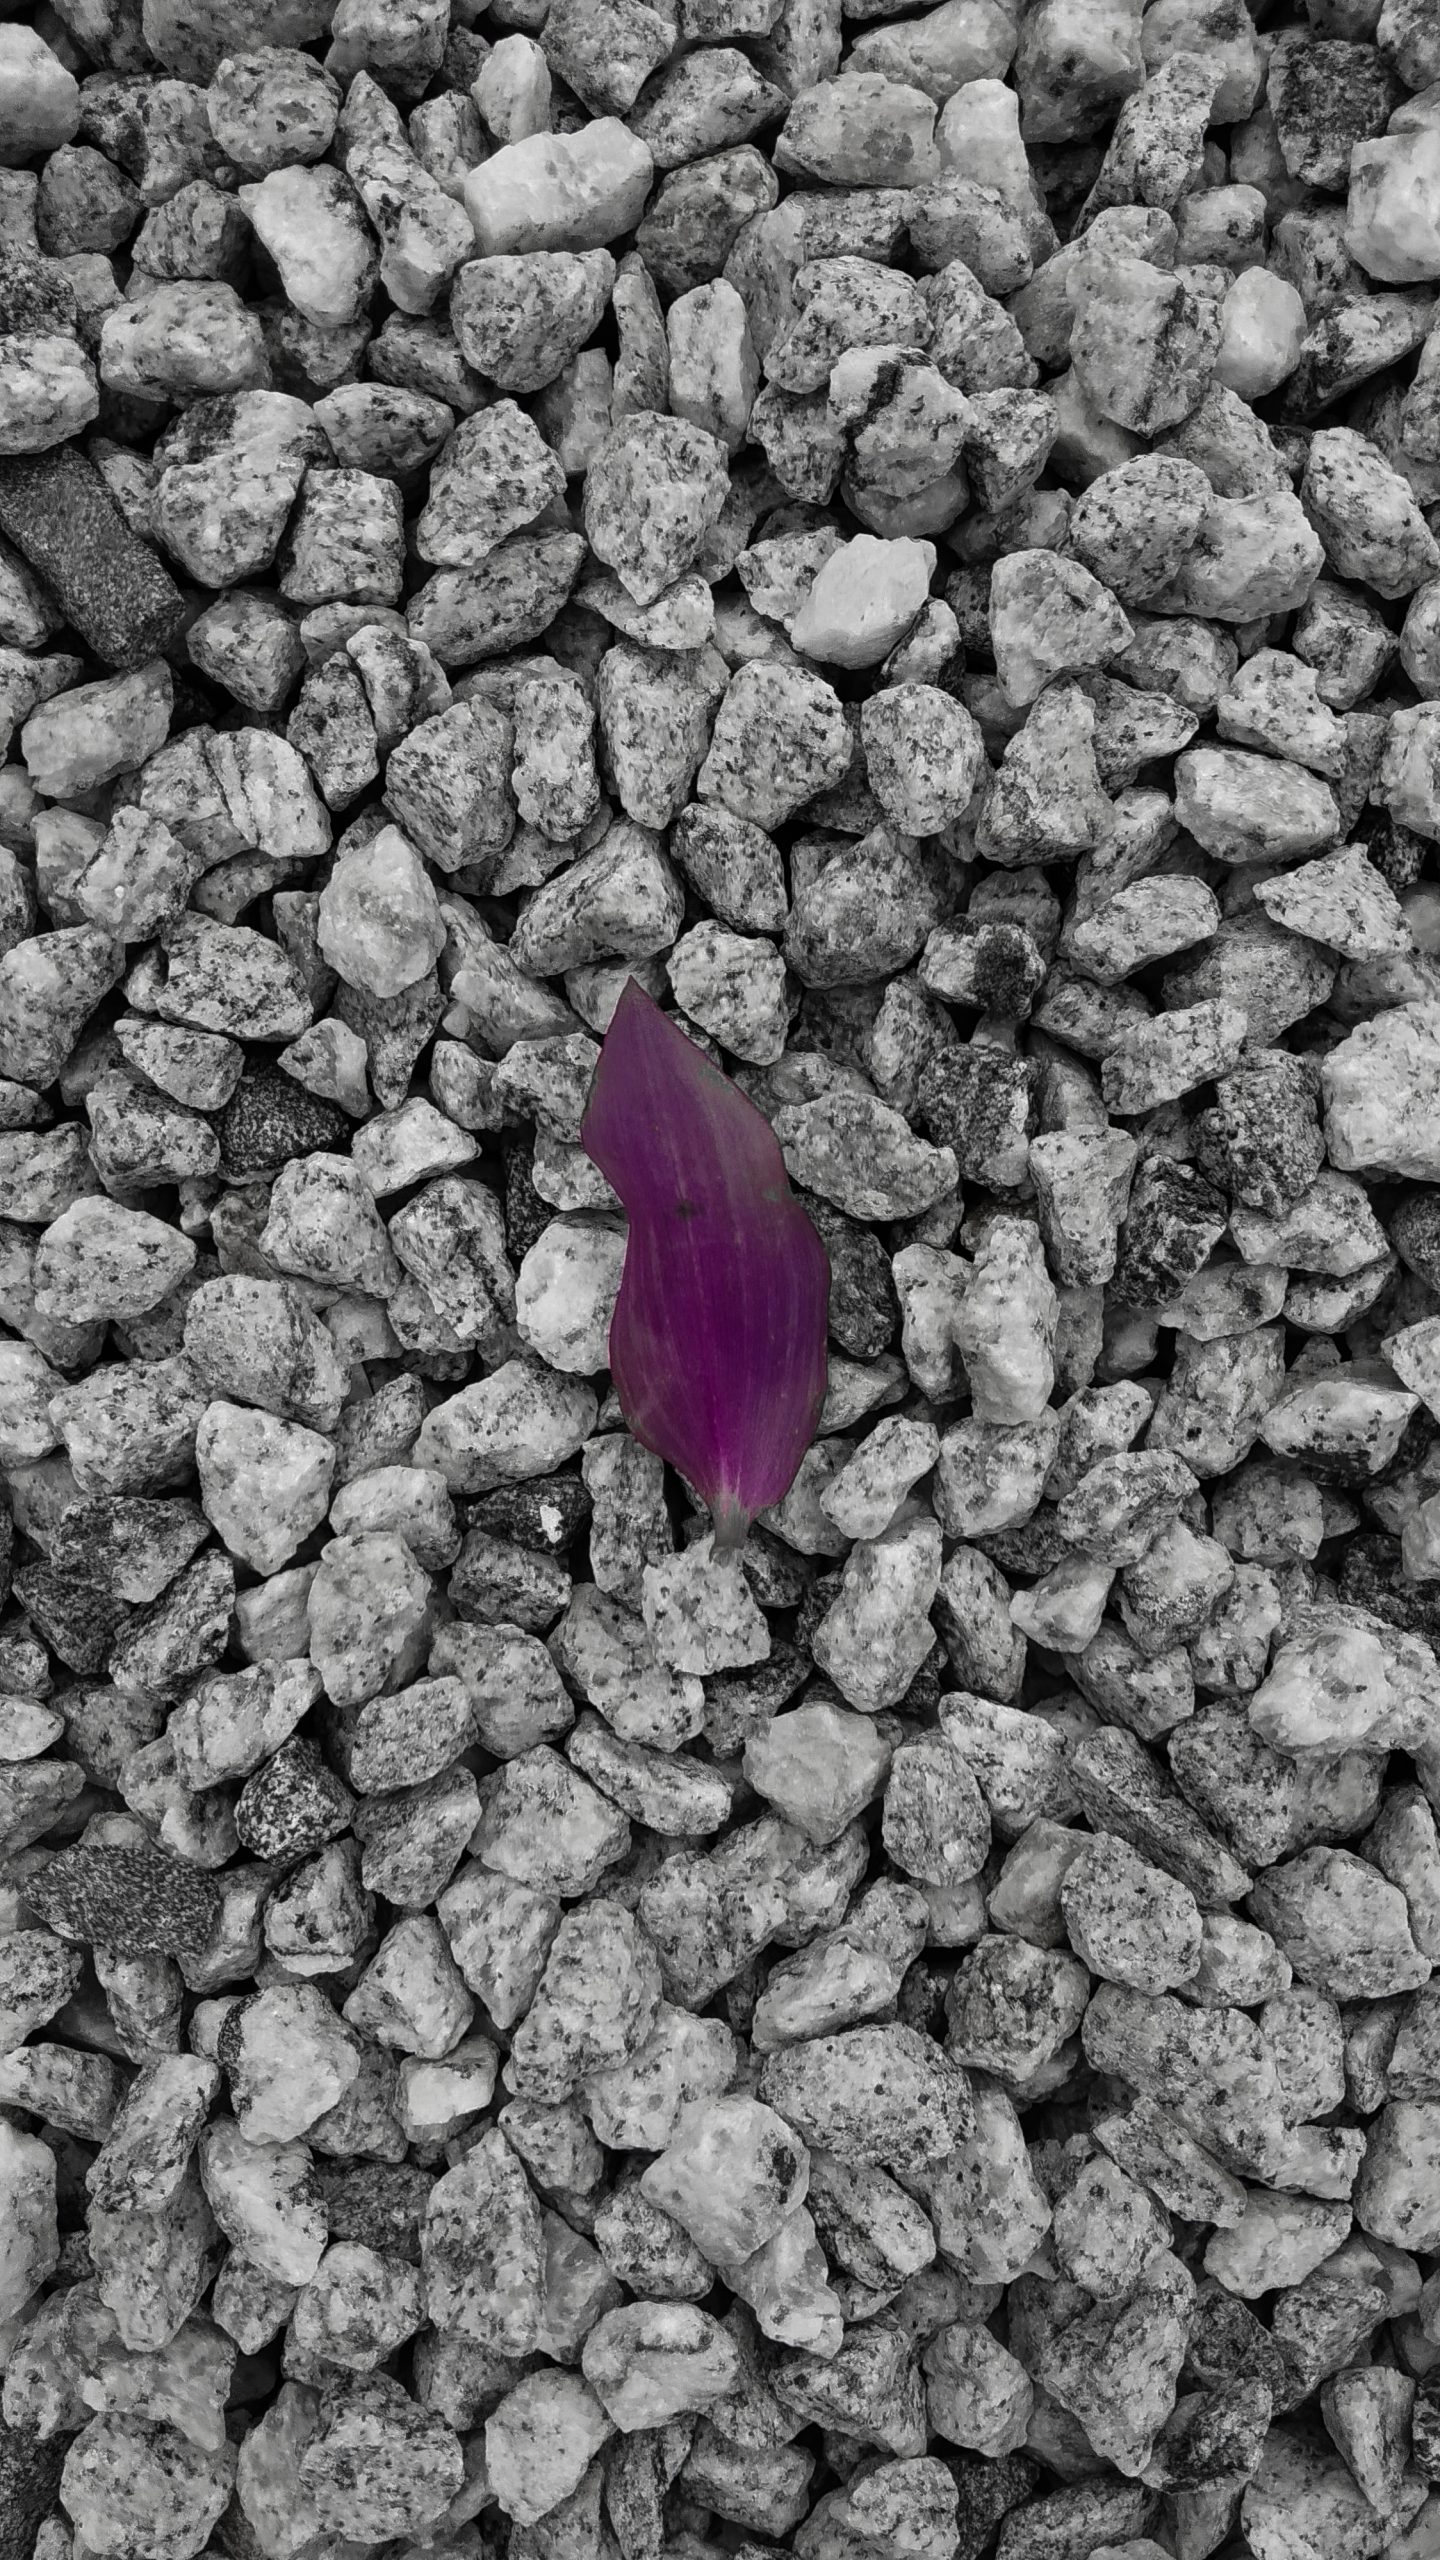 Purple leaf placed on the stones